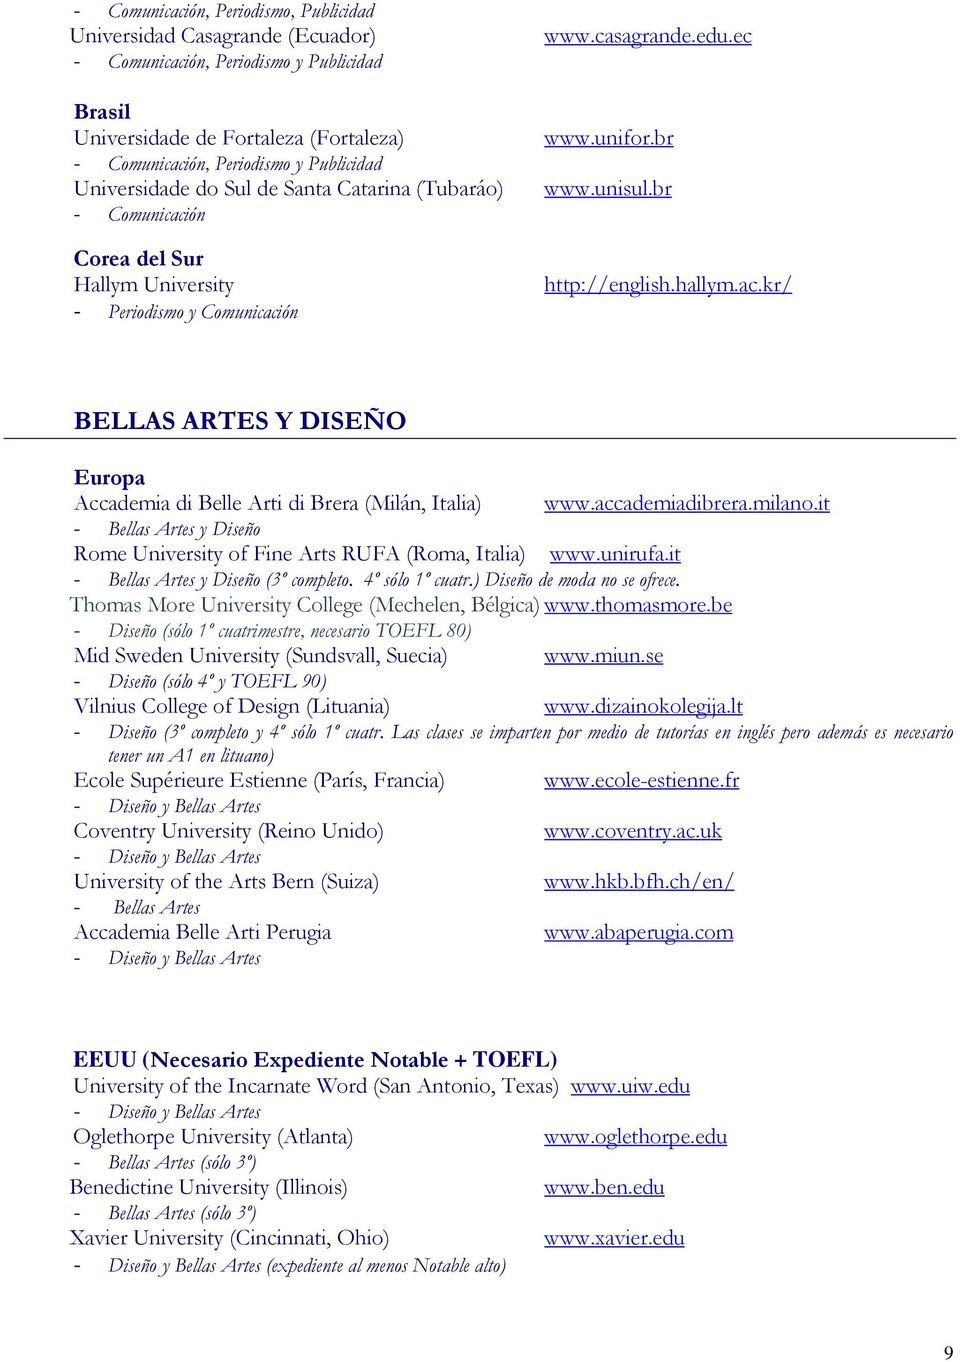 accademiadibrera.milano.it - Bellas Artes y Diseño Rome University of Fine Arts RUFA (Roma, Italia) www.unirufa.it - Bellas Artes y Diseño (3º completo. 4º sólo 1º cuatr.) Diseño de moda no se ofrece.